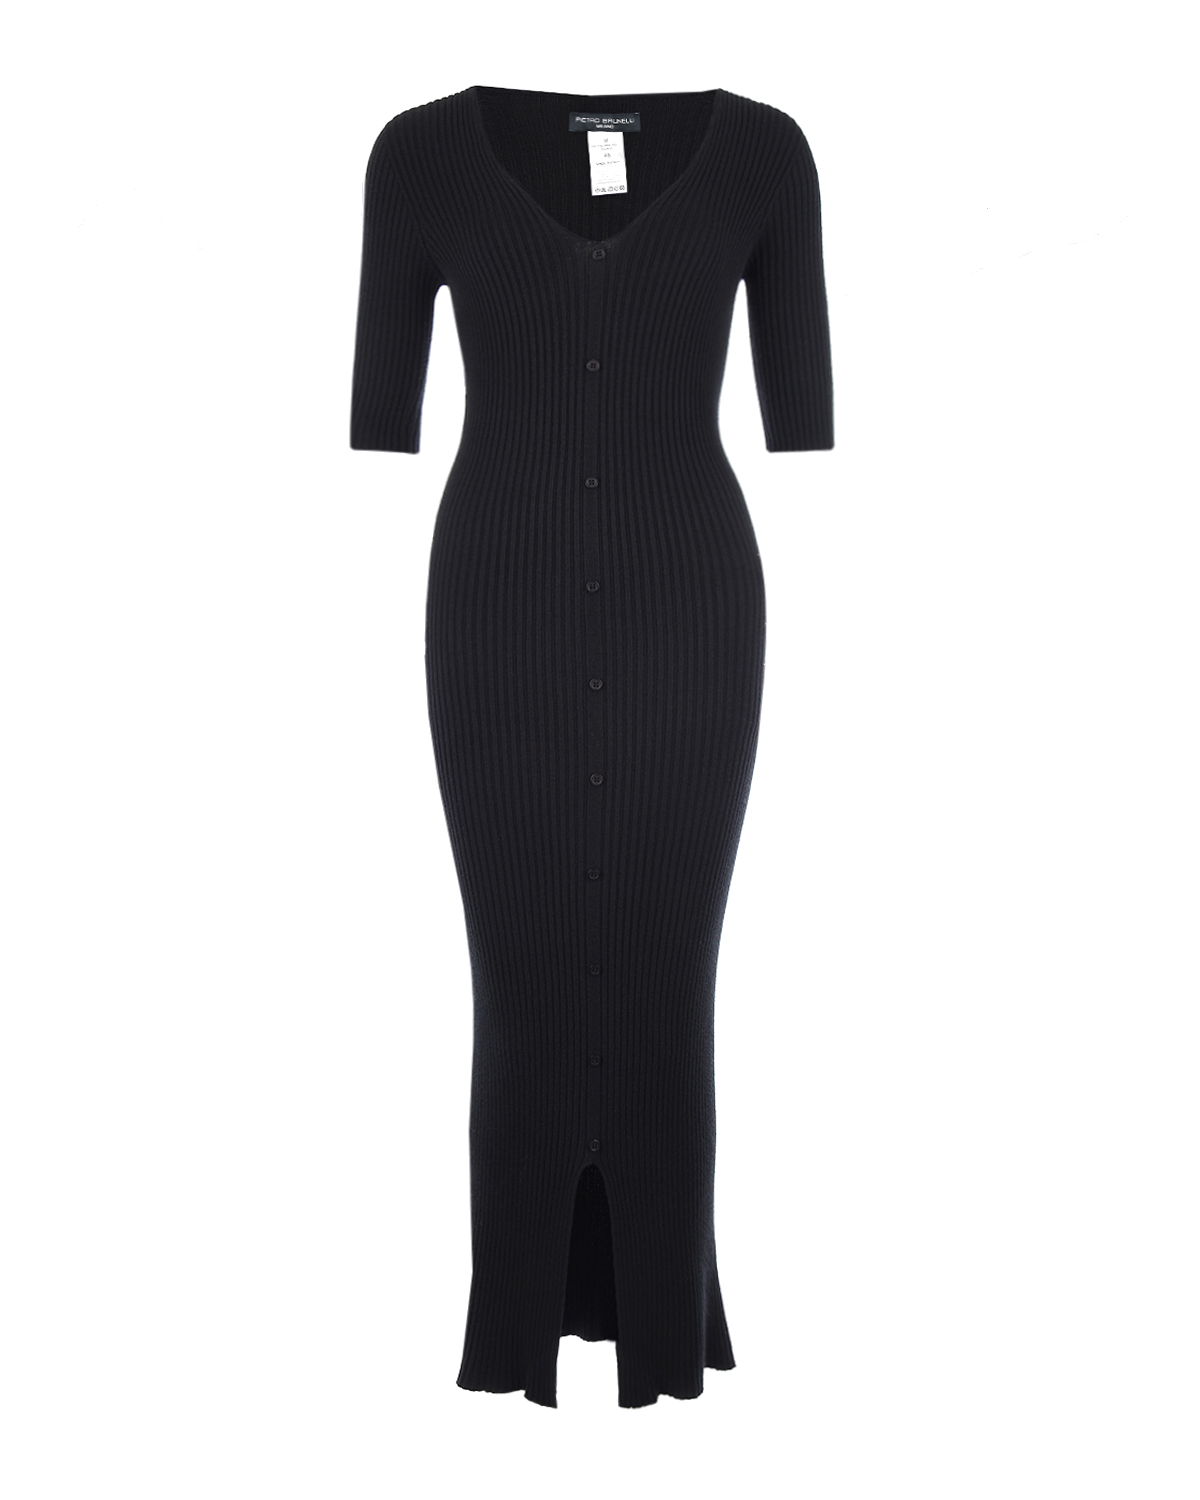 Черное трикотажное платье Bella Pietro Brunelli, размер 40, цвет черный - фото 1